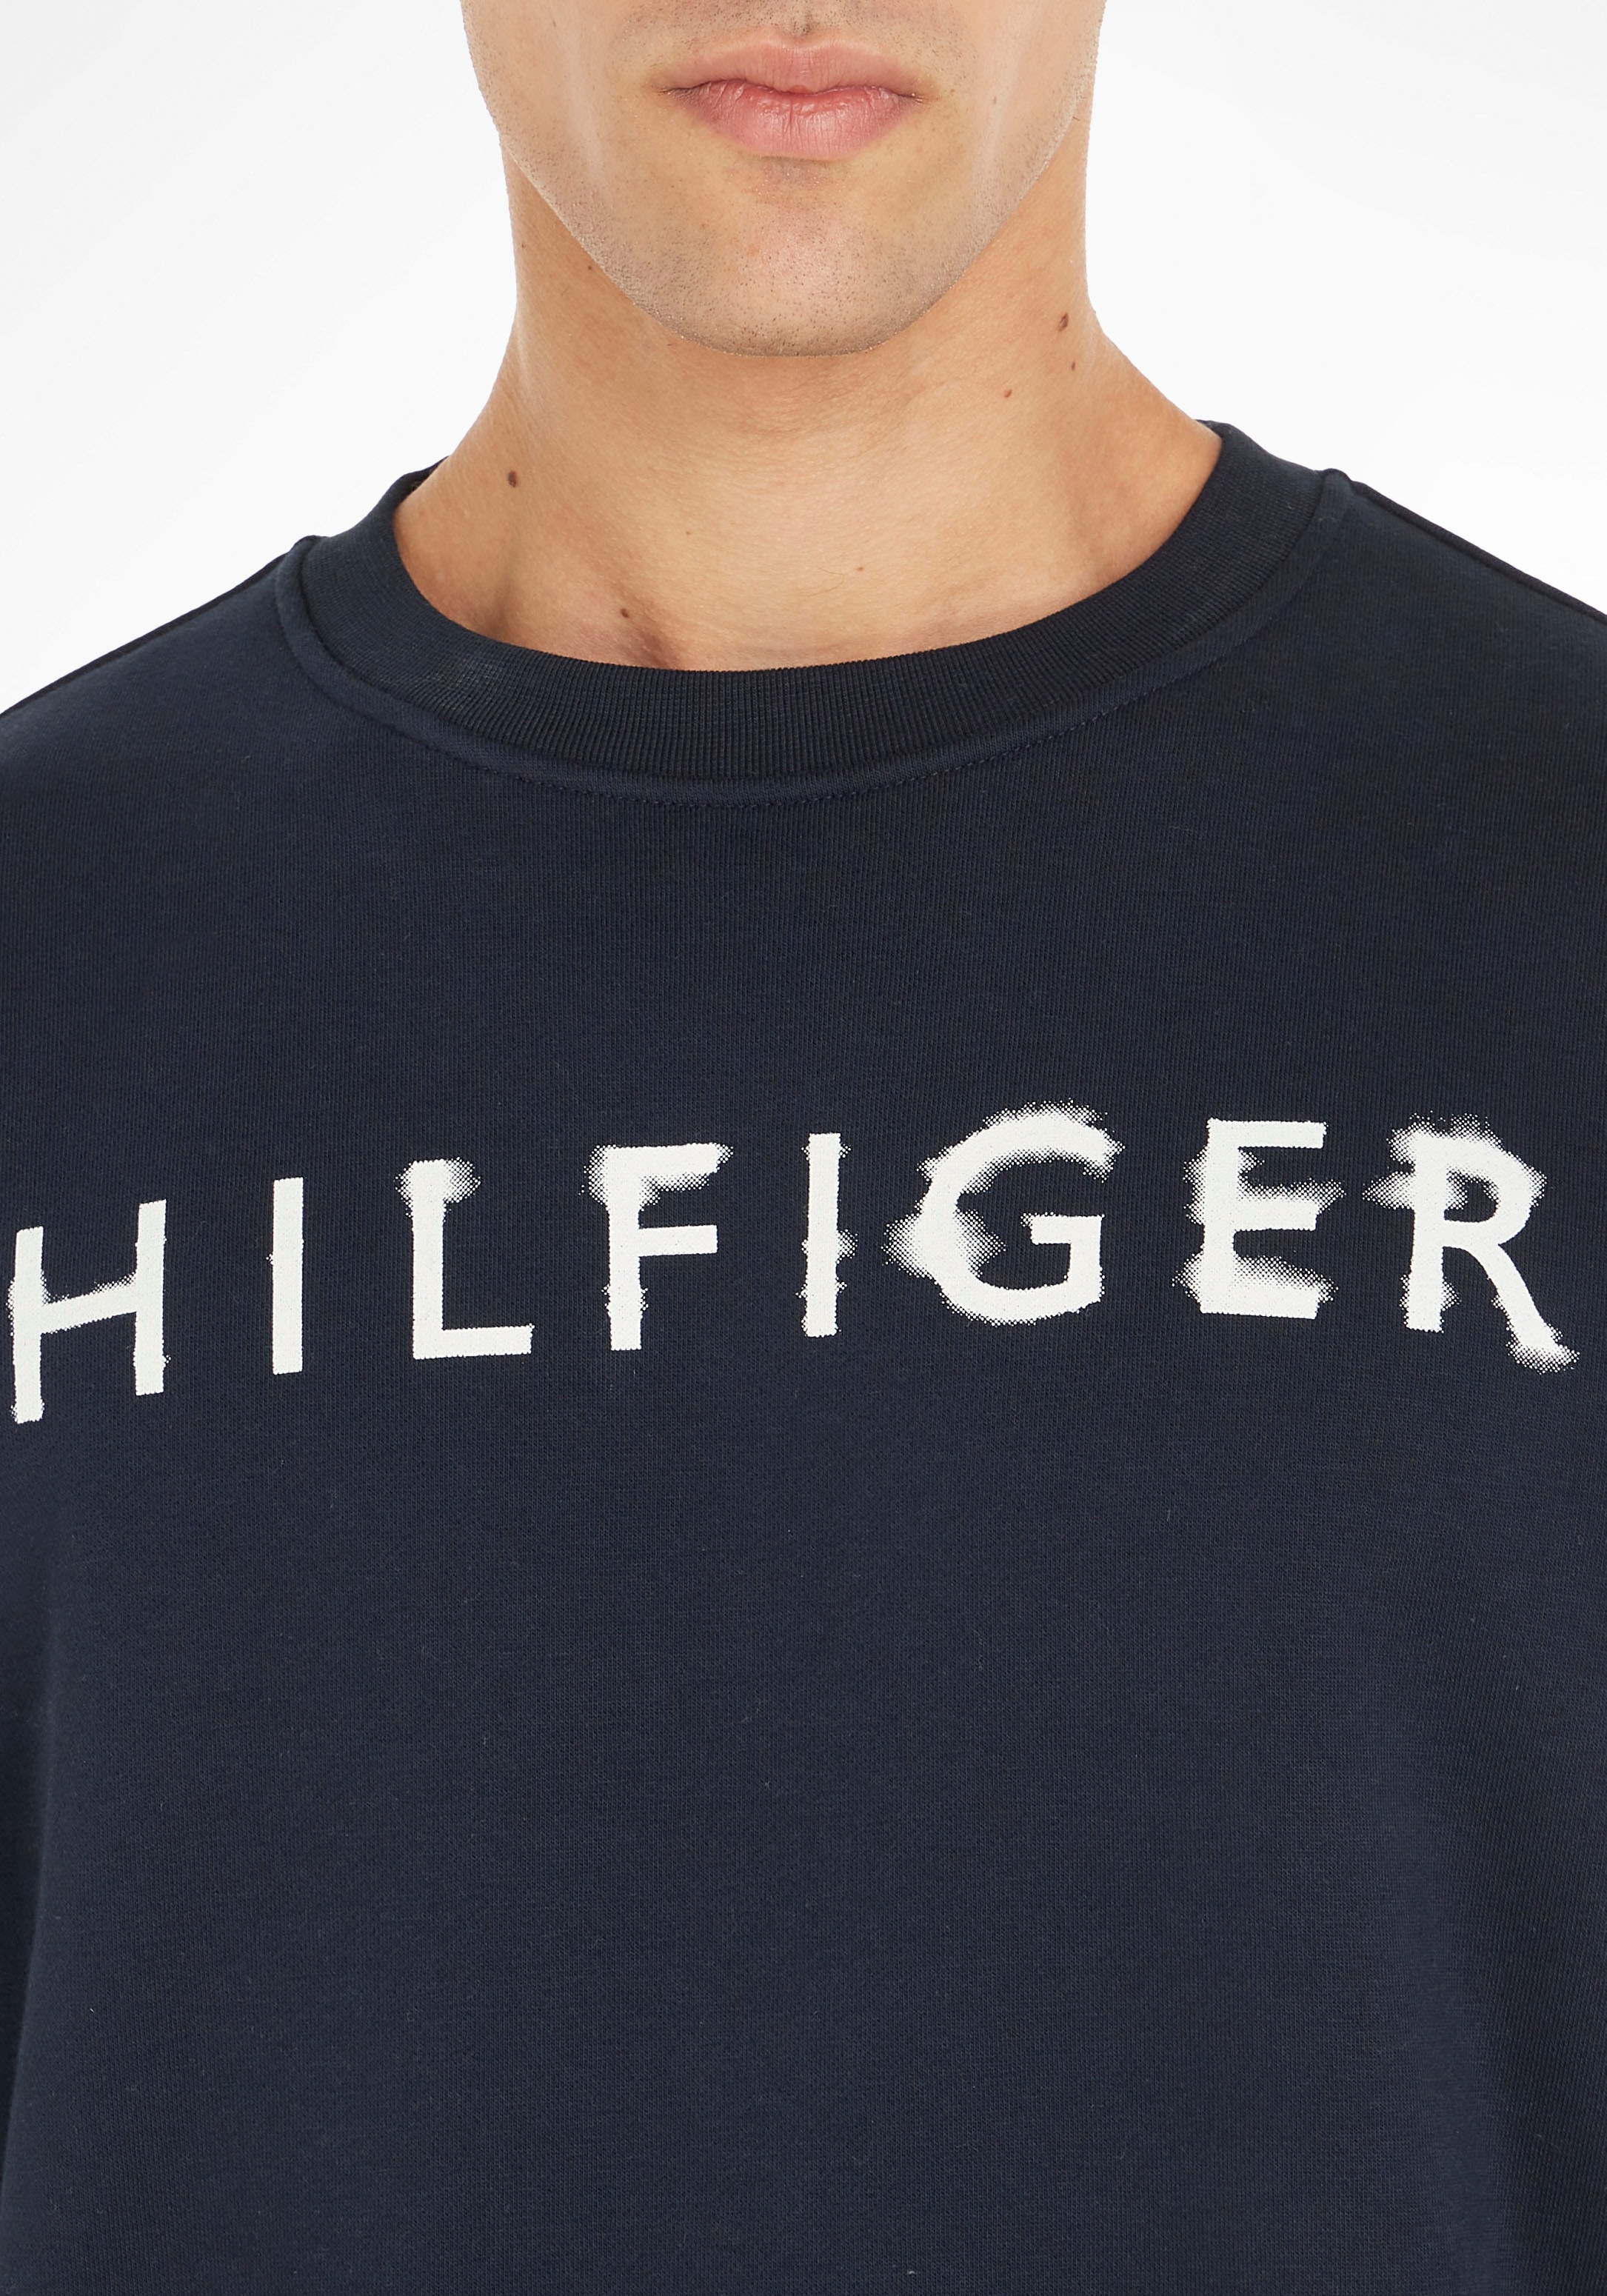 Sweatshirt INK Tommy OTTO bei »HILFIGER bestellen Hilfiger CREWNECK« online